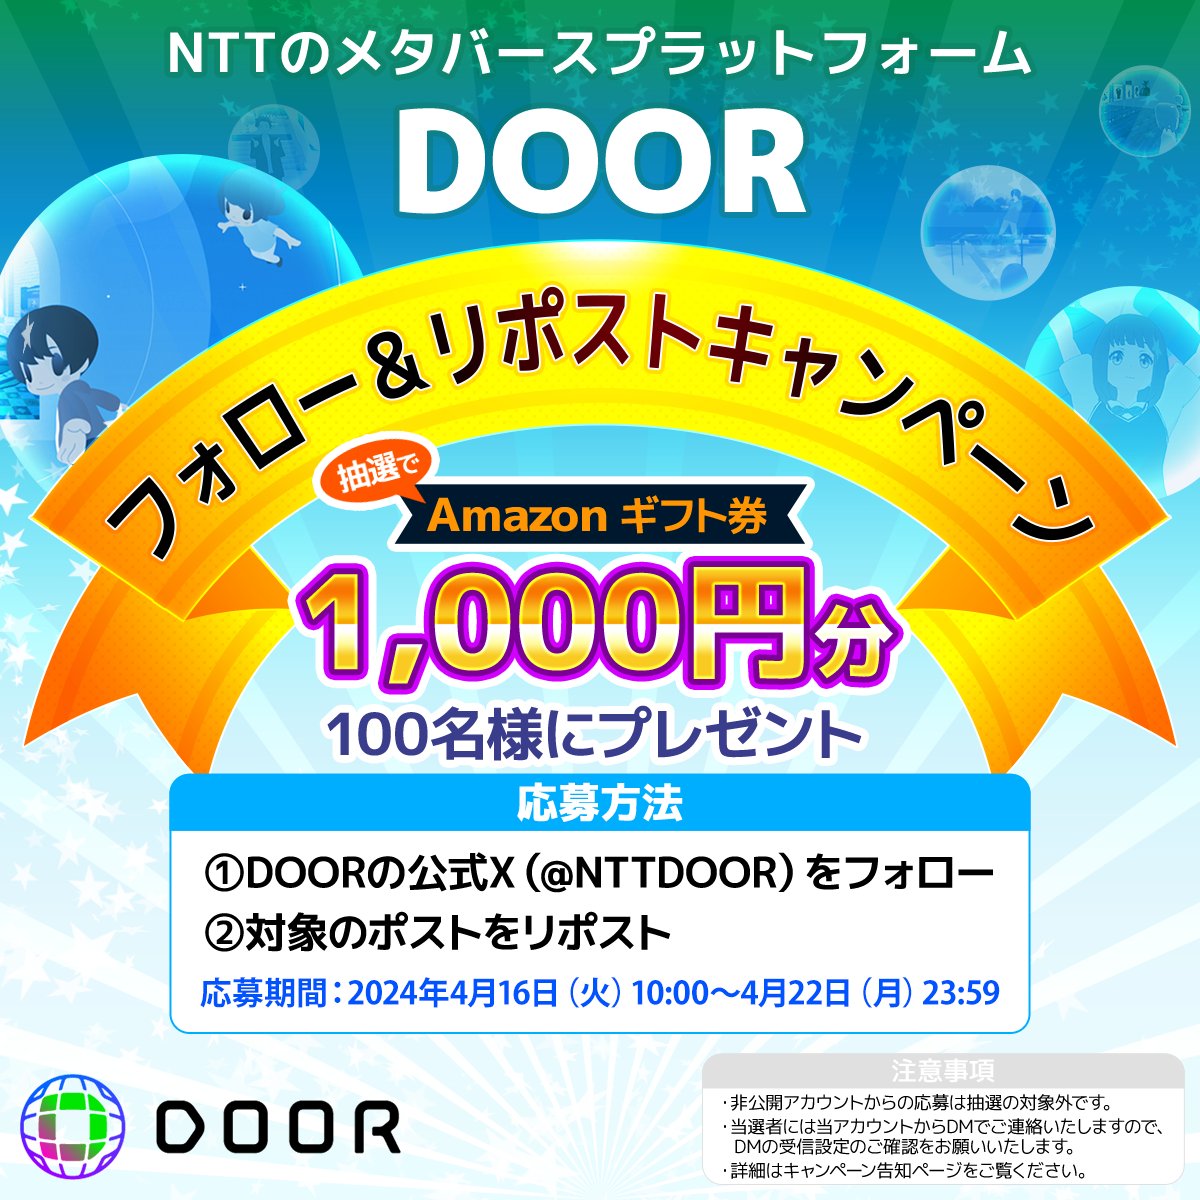 NTTコノキューのメタバースプラットフォーム「DOOR」
🌸公式Xフォロー＆リポストキャンペーン🌸
／
抽選で100名様に1,000円分のAmazonギフトカードをプレゼント🎁
＼

応募方法📷
📷@NTTDOORをフォロー
📷本投稿をリポスト

開催期間：
2024/4/16（火）10:00～2024/4/22(月)23:59まで

詳細はこちら⏩…